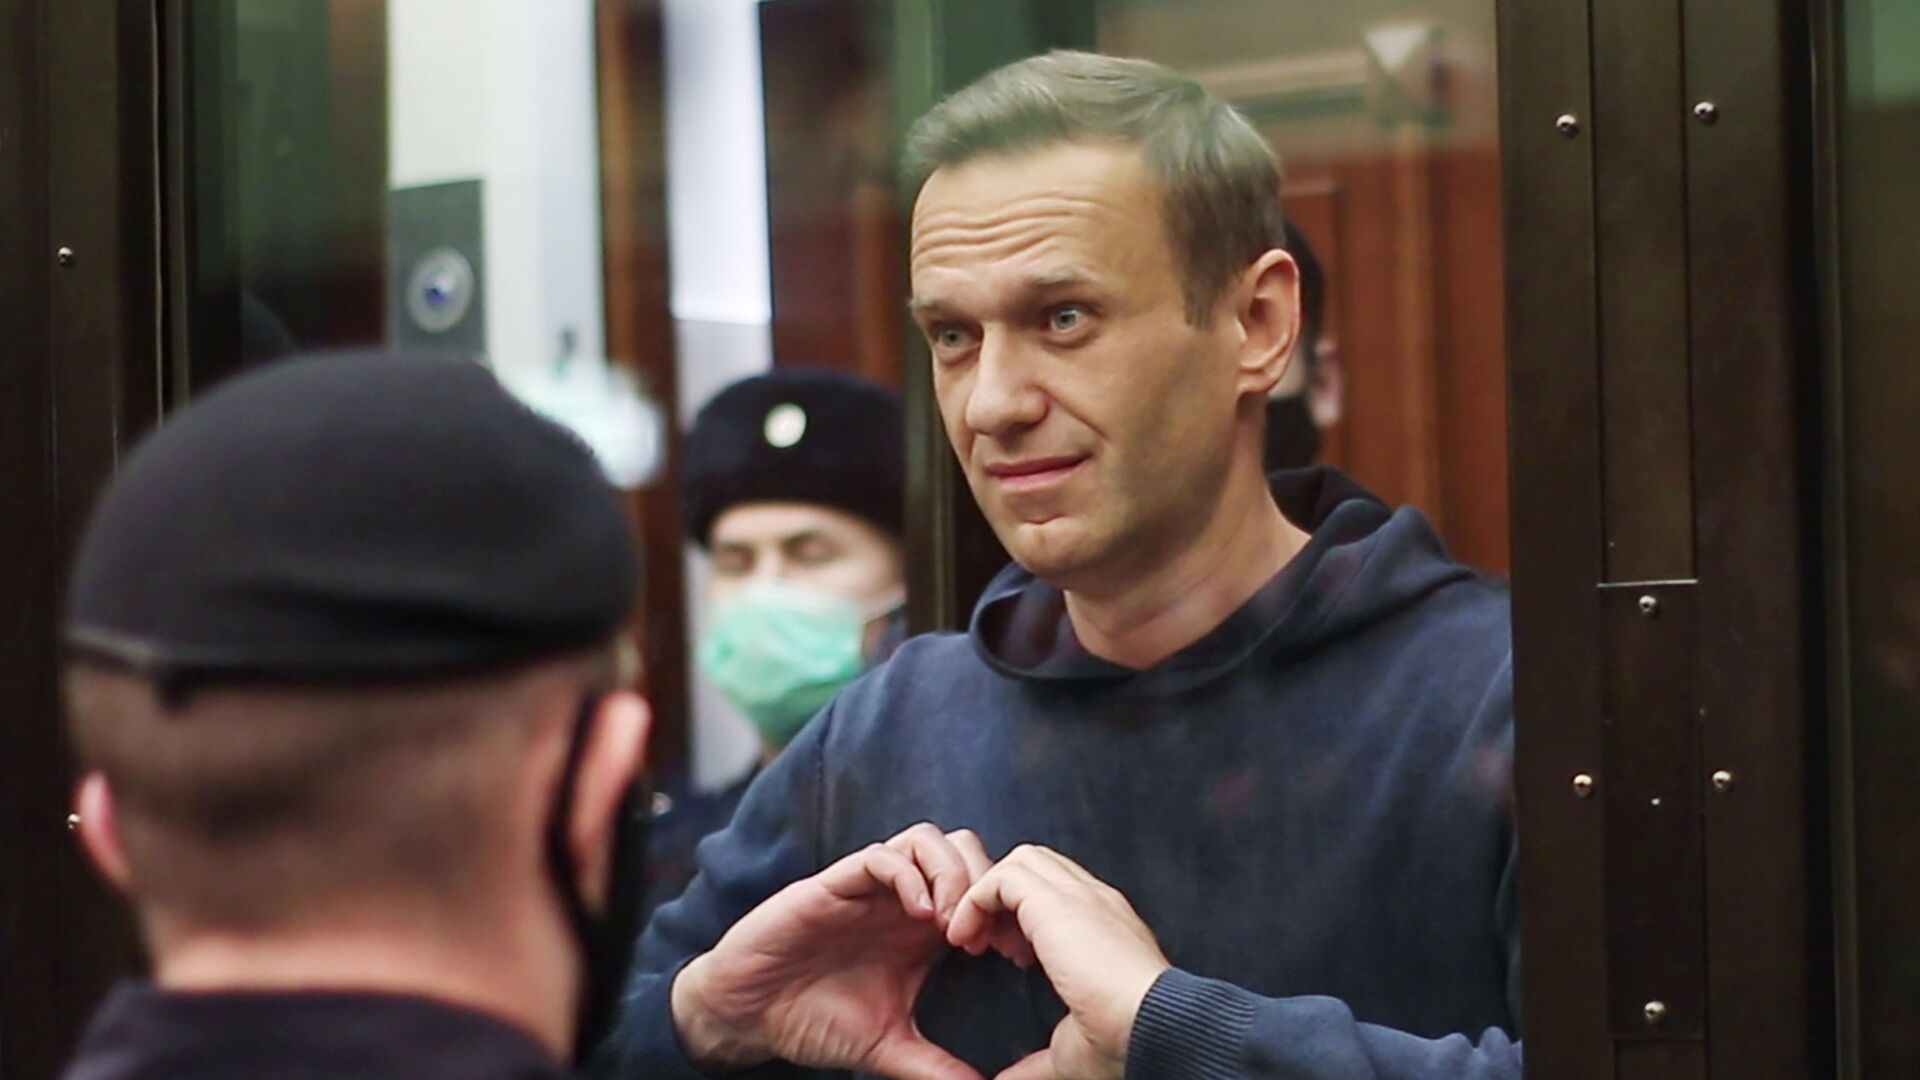 Как убили алексея навального